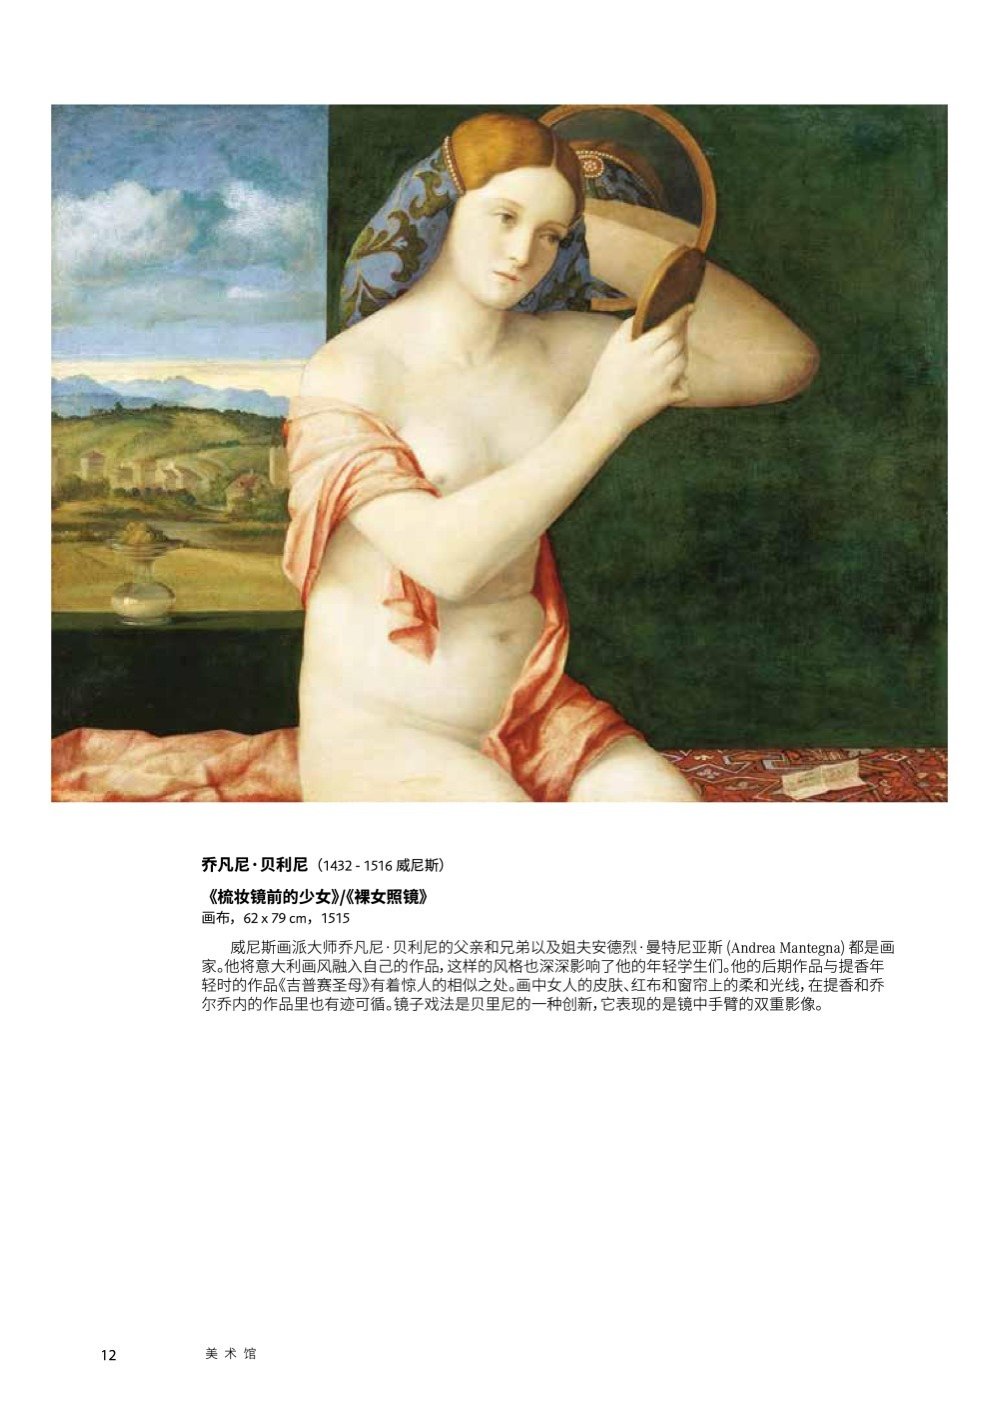 9783222140211 - Kunsthistorisches Museum Vienna -  Chinese Edition